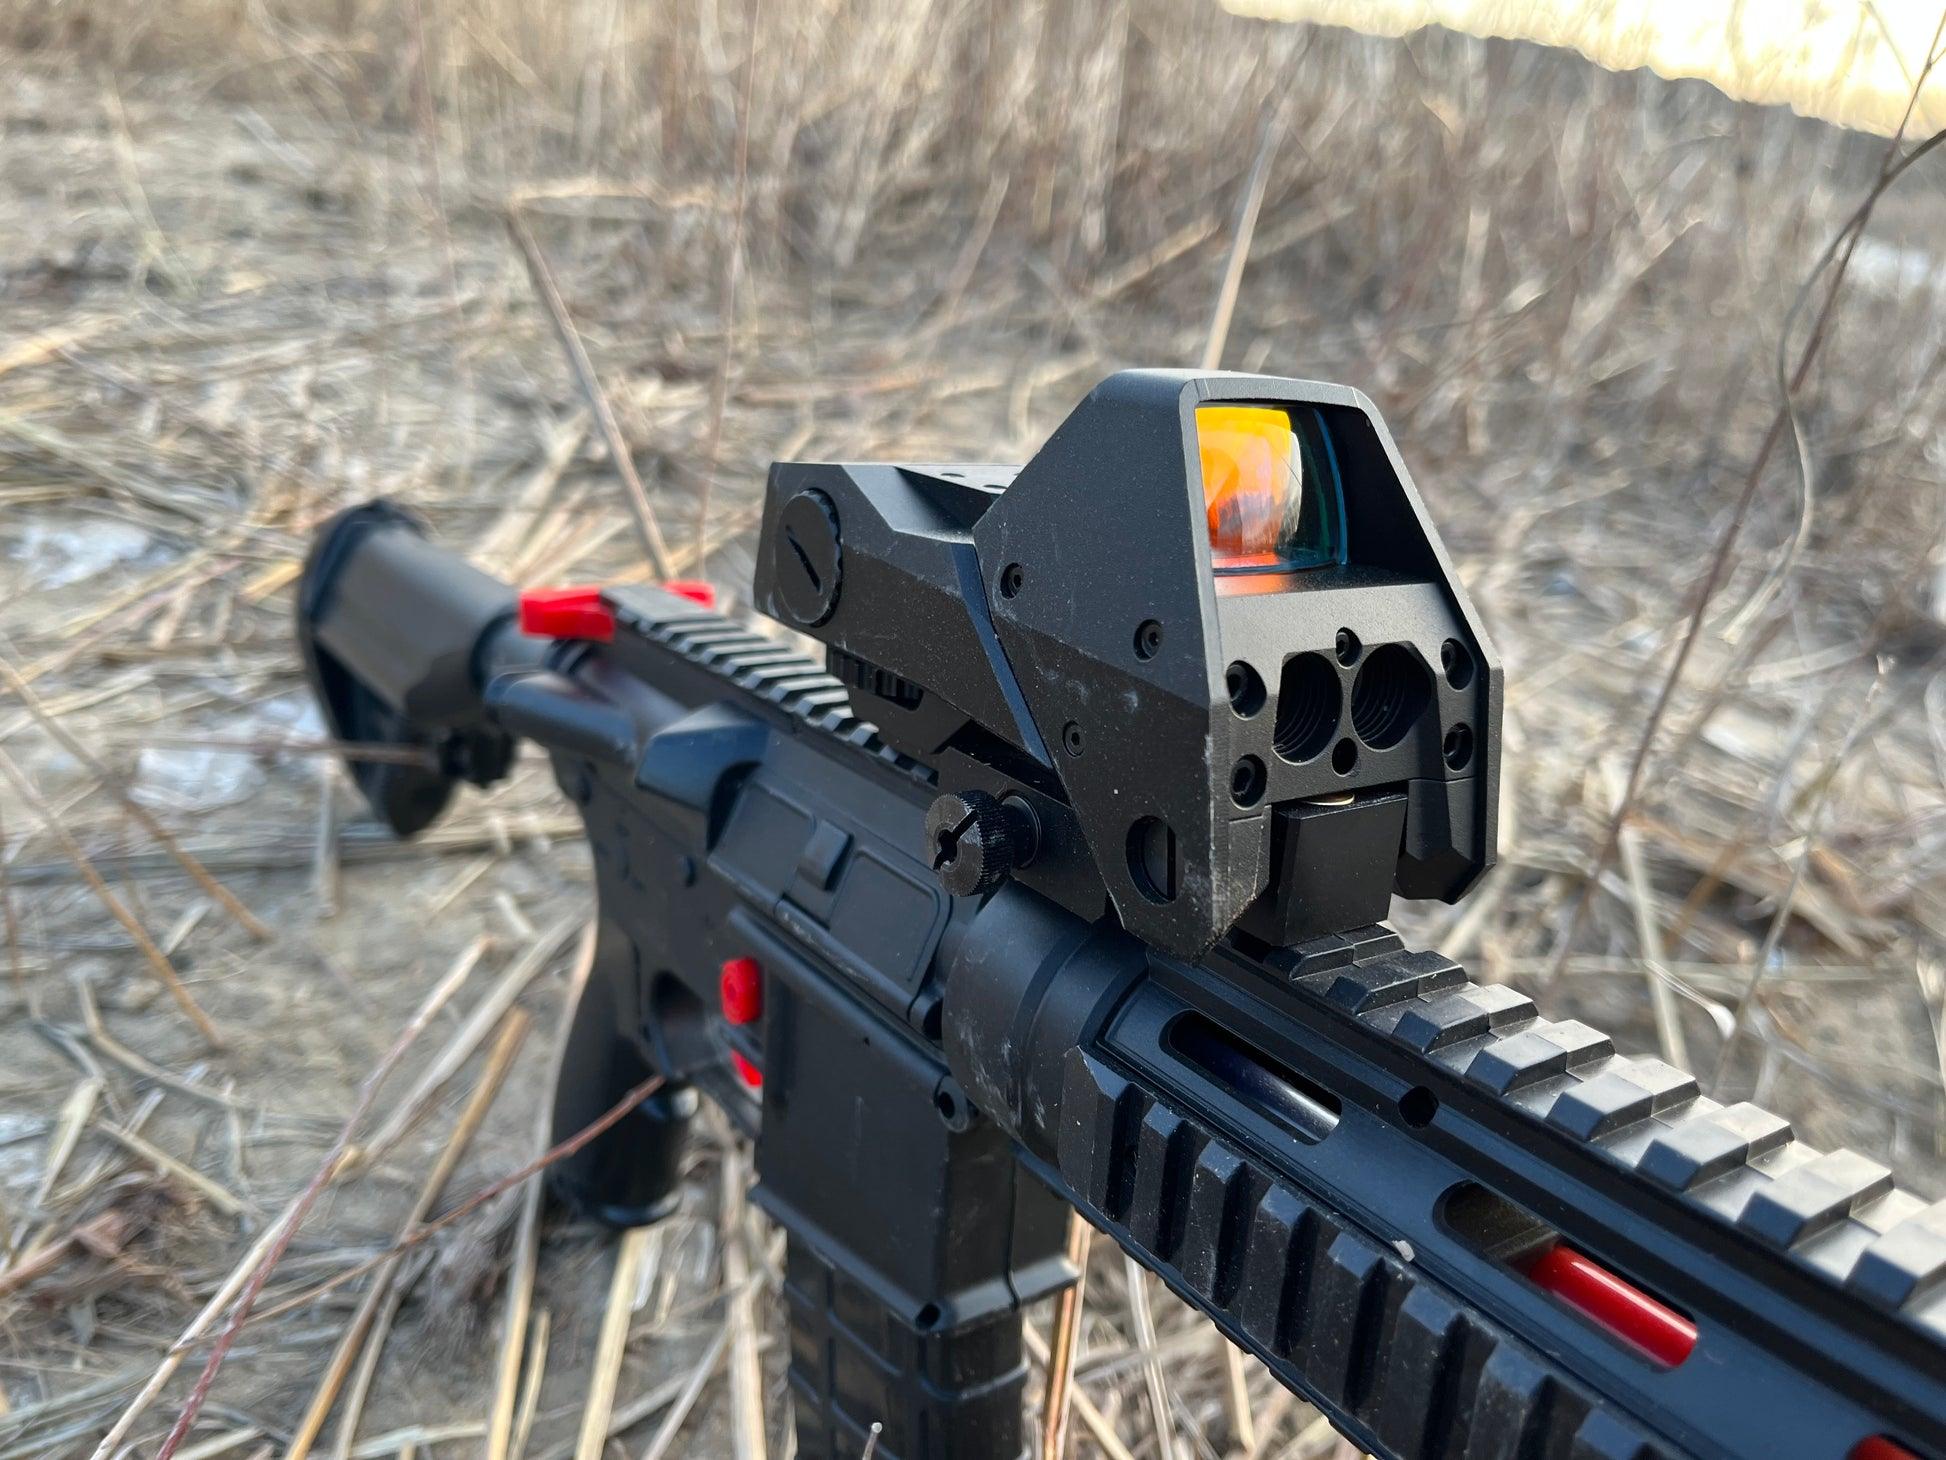 Rangefinder demo in "Sniper" mode